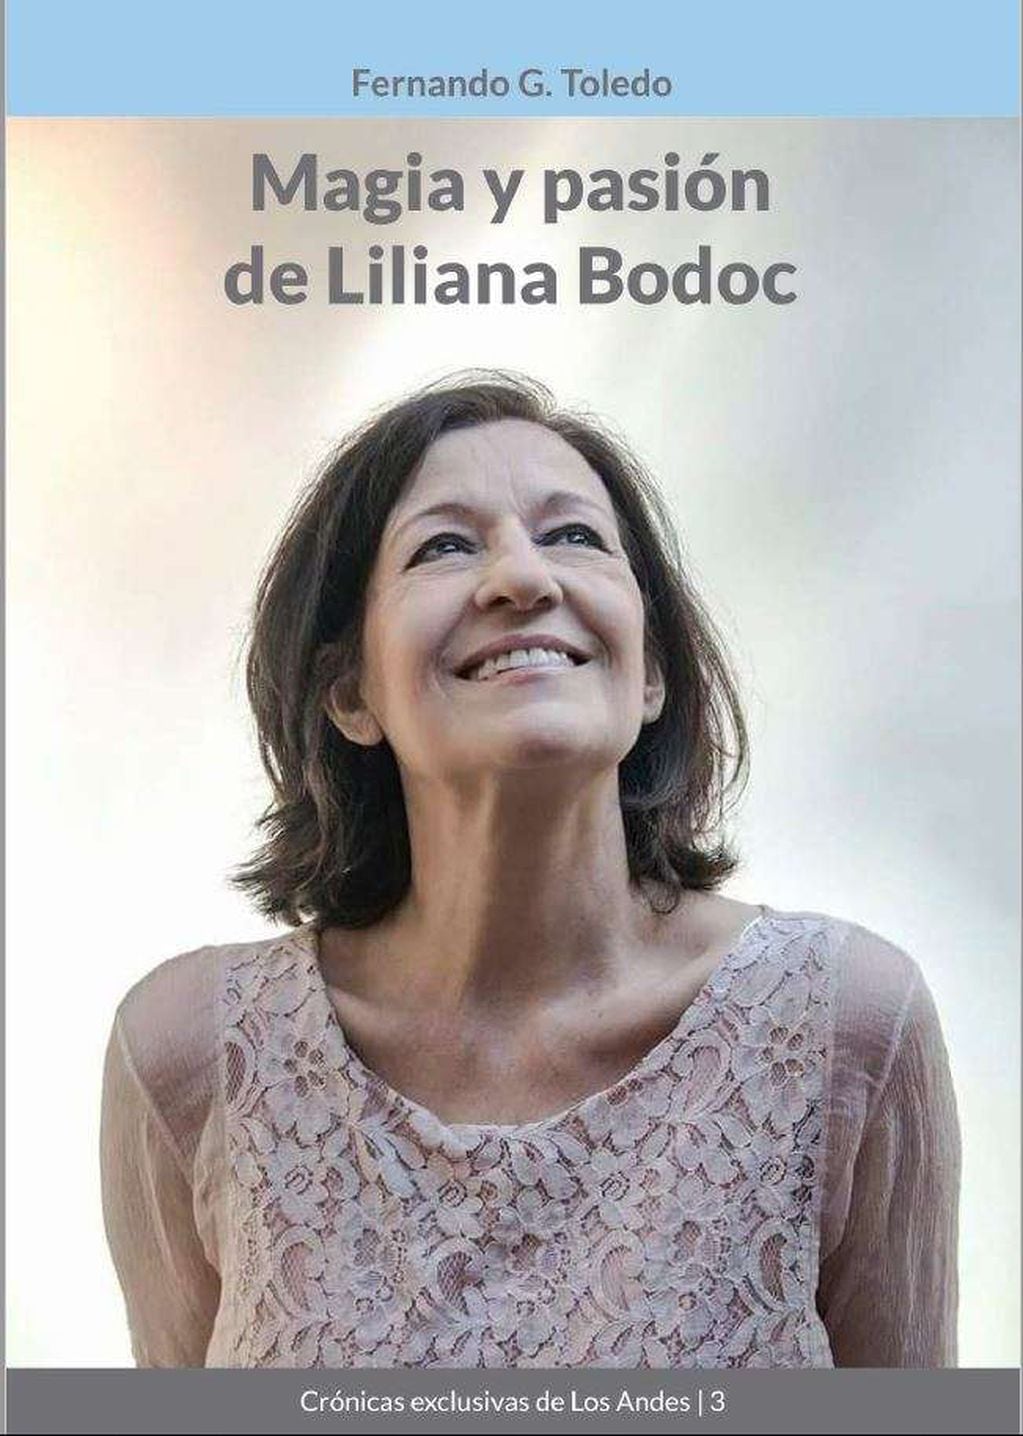 
Magia y pasión de Liliana Bodoc, por Fernando G. Toledo
